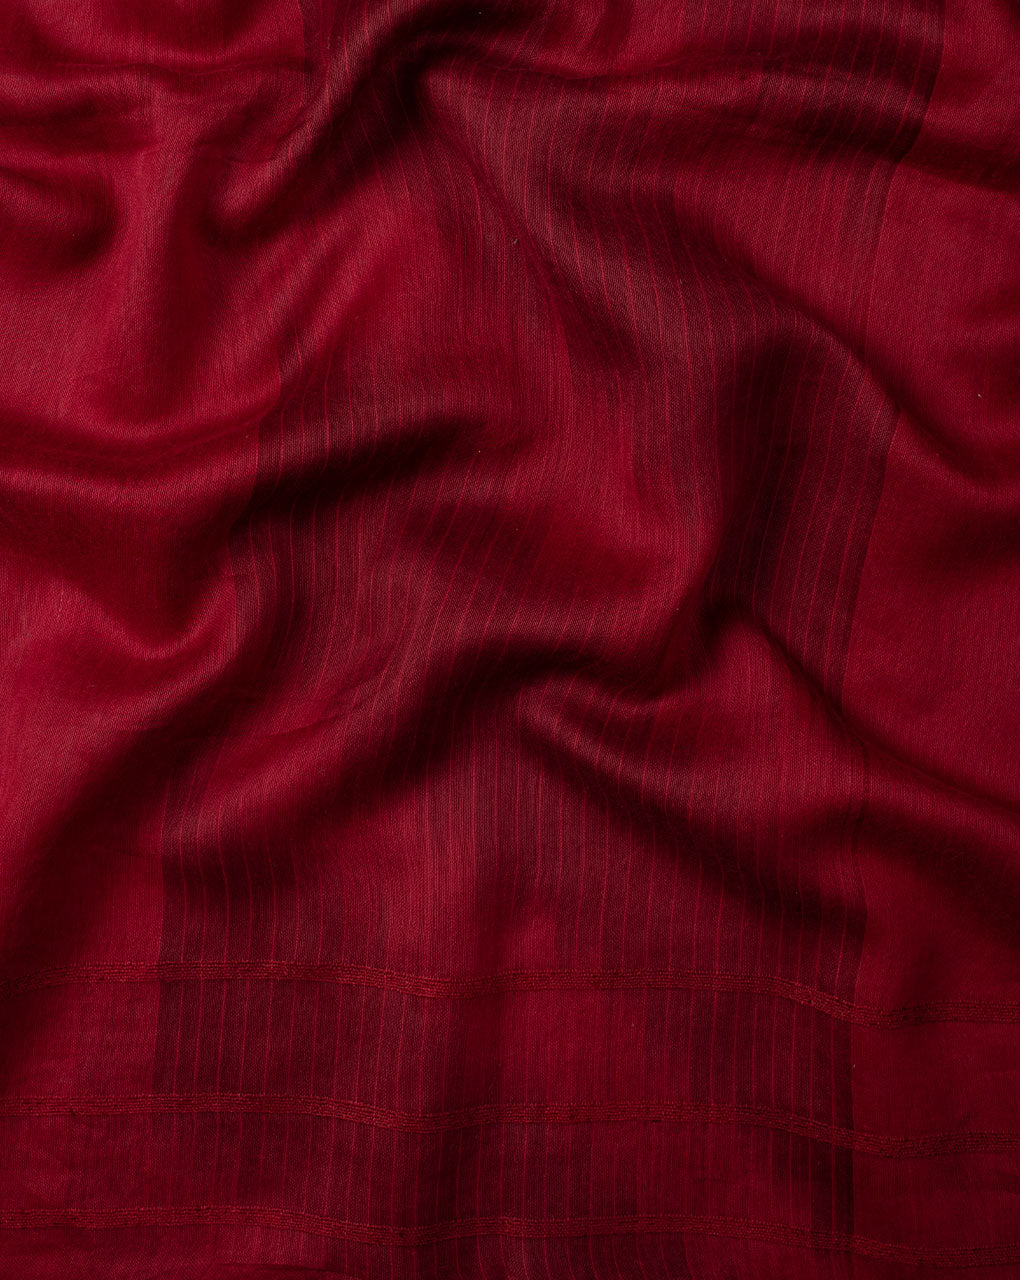 Maroon Plain Woven Bhagalpuri Cotton Stole - Fabriclore.com